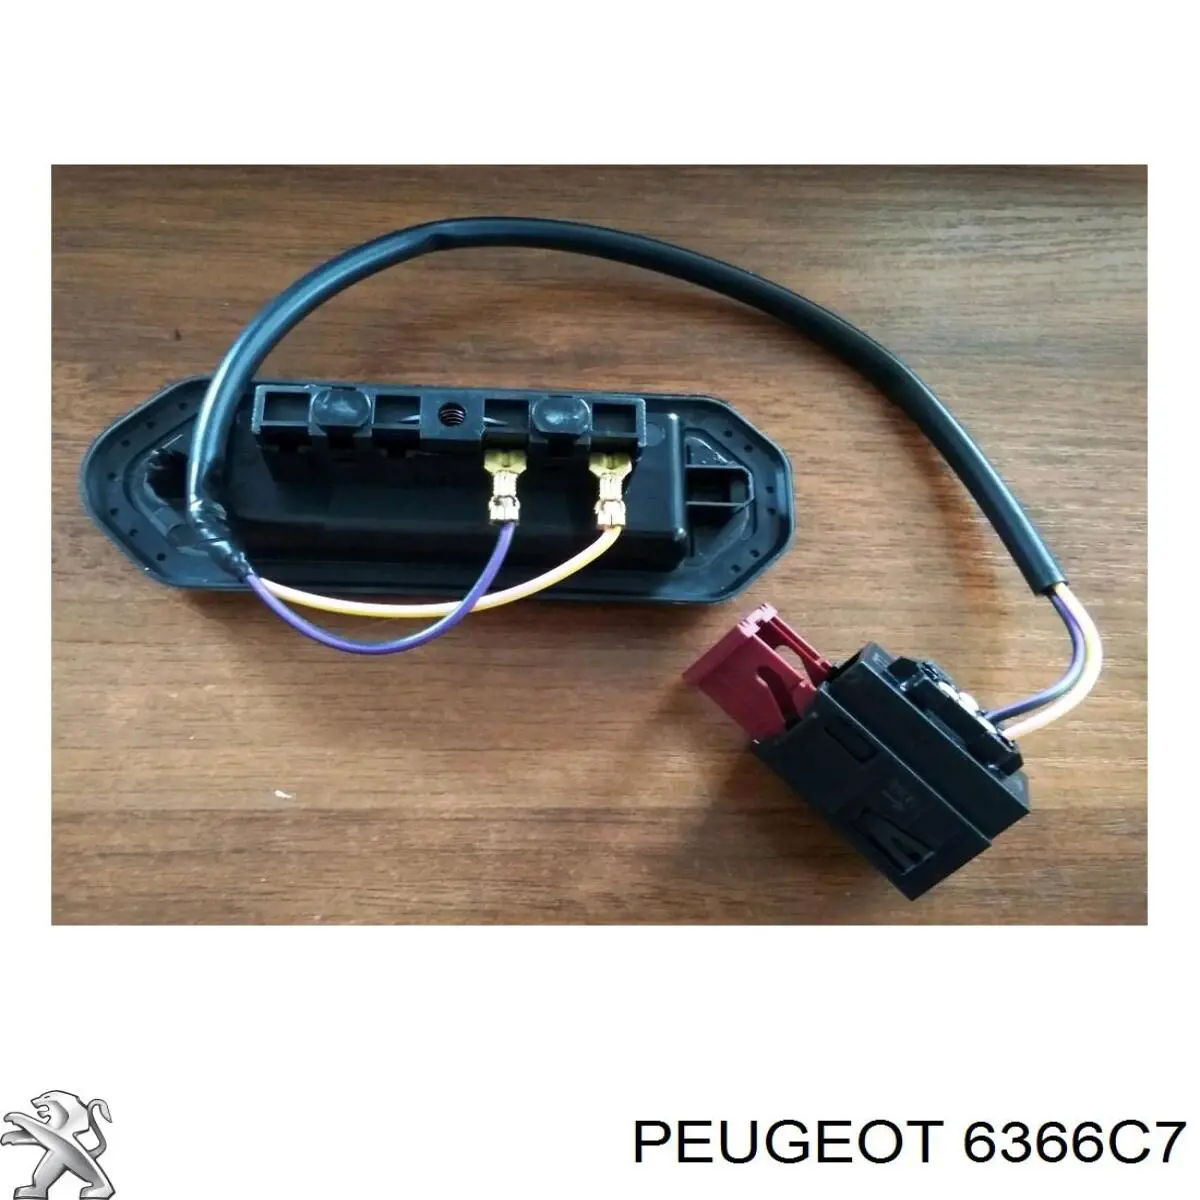 6366C7 Peugeot/Citroen sensor de fechamento de portas (interruptor de fim de carreira)